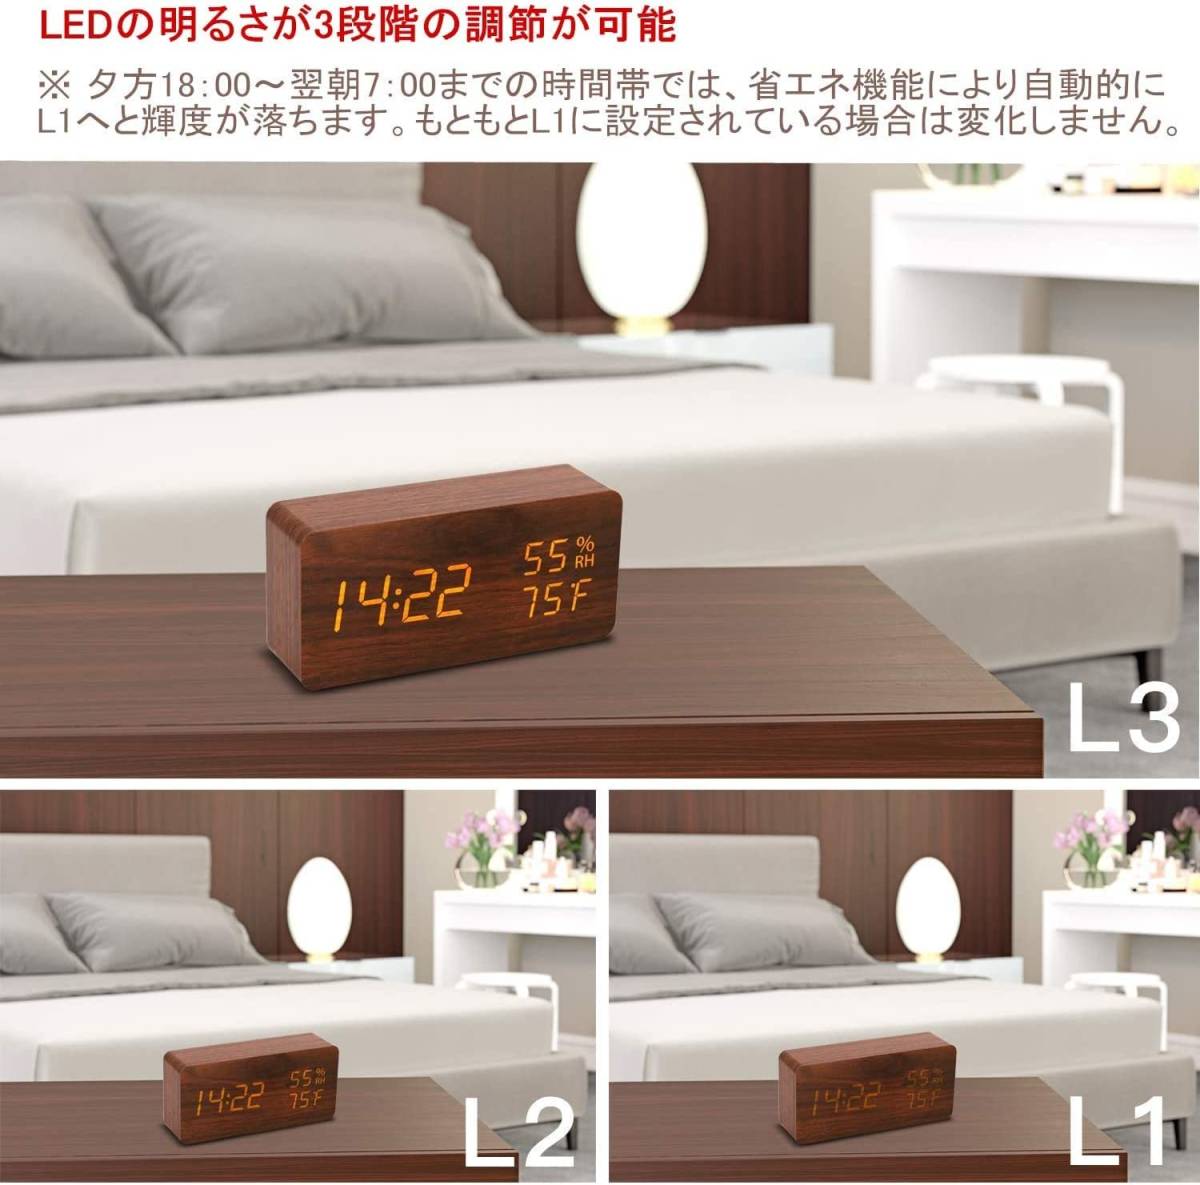 多機能 目覚まし時計 インテリア デジタル 木製 LED おしゃれ 雑貨 クラシック アンティーク 置き時計 クロック かわいい オブジェクト